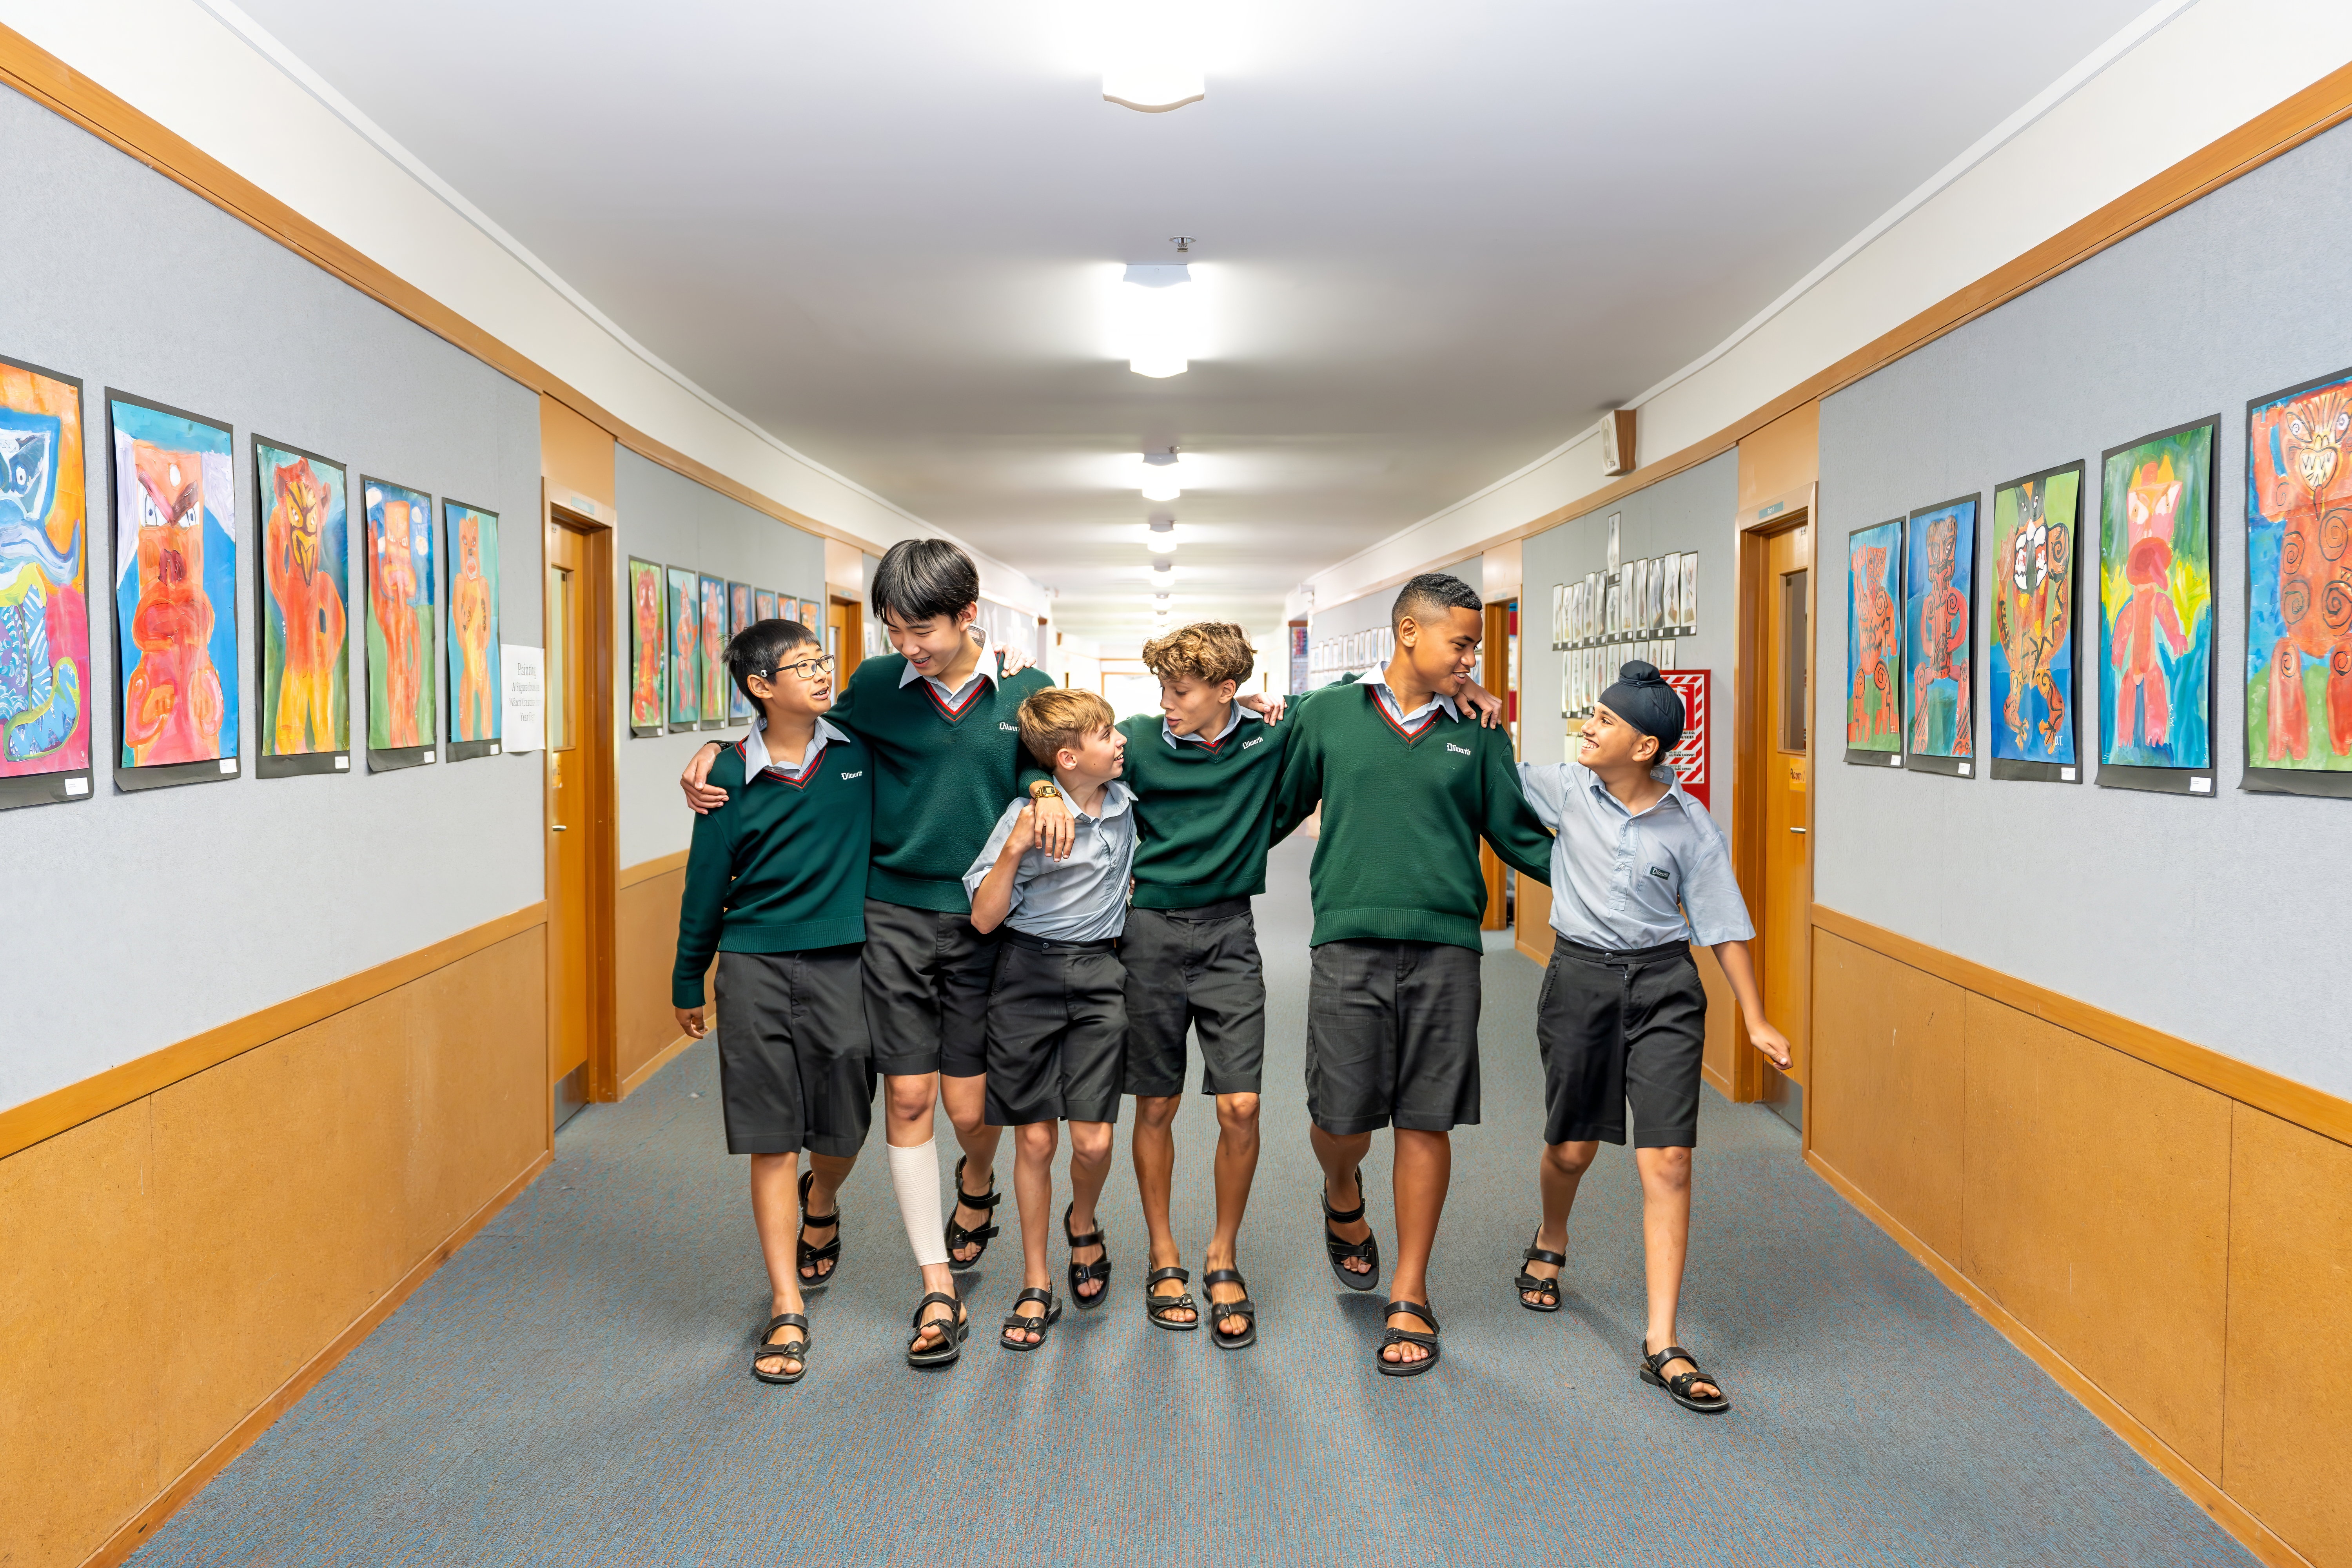 boys walking down a school hallway